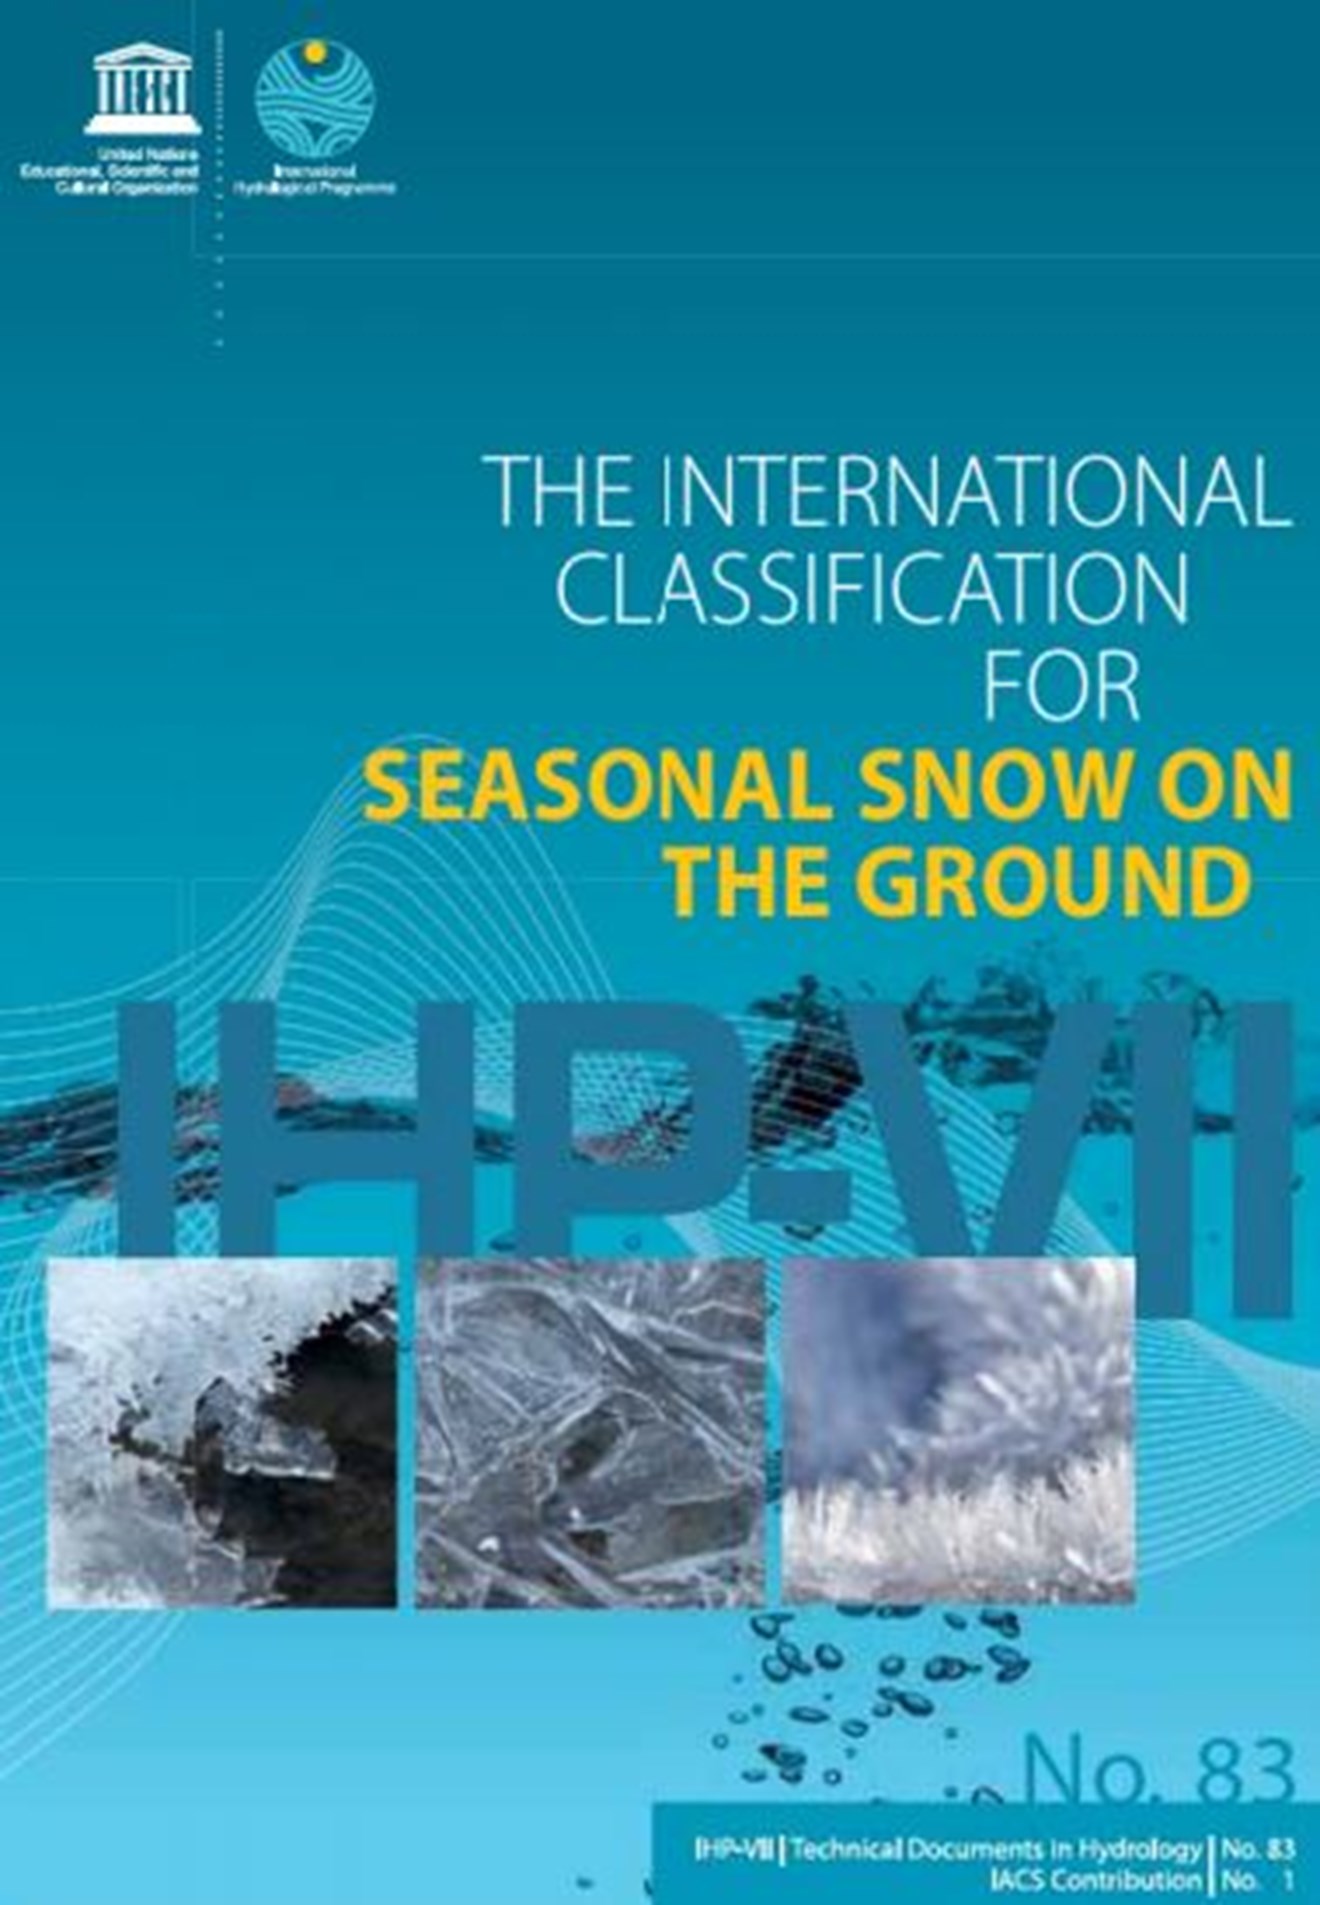 Forsiden til skrivet "The international classification for seasonal snow on the ground".